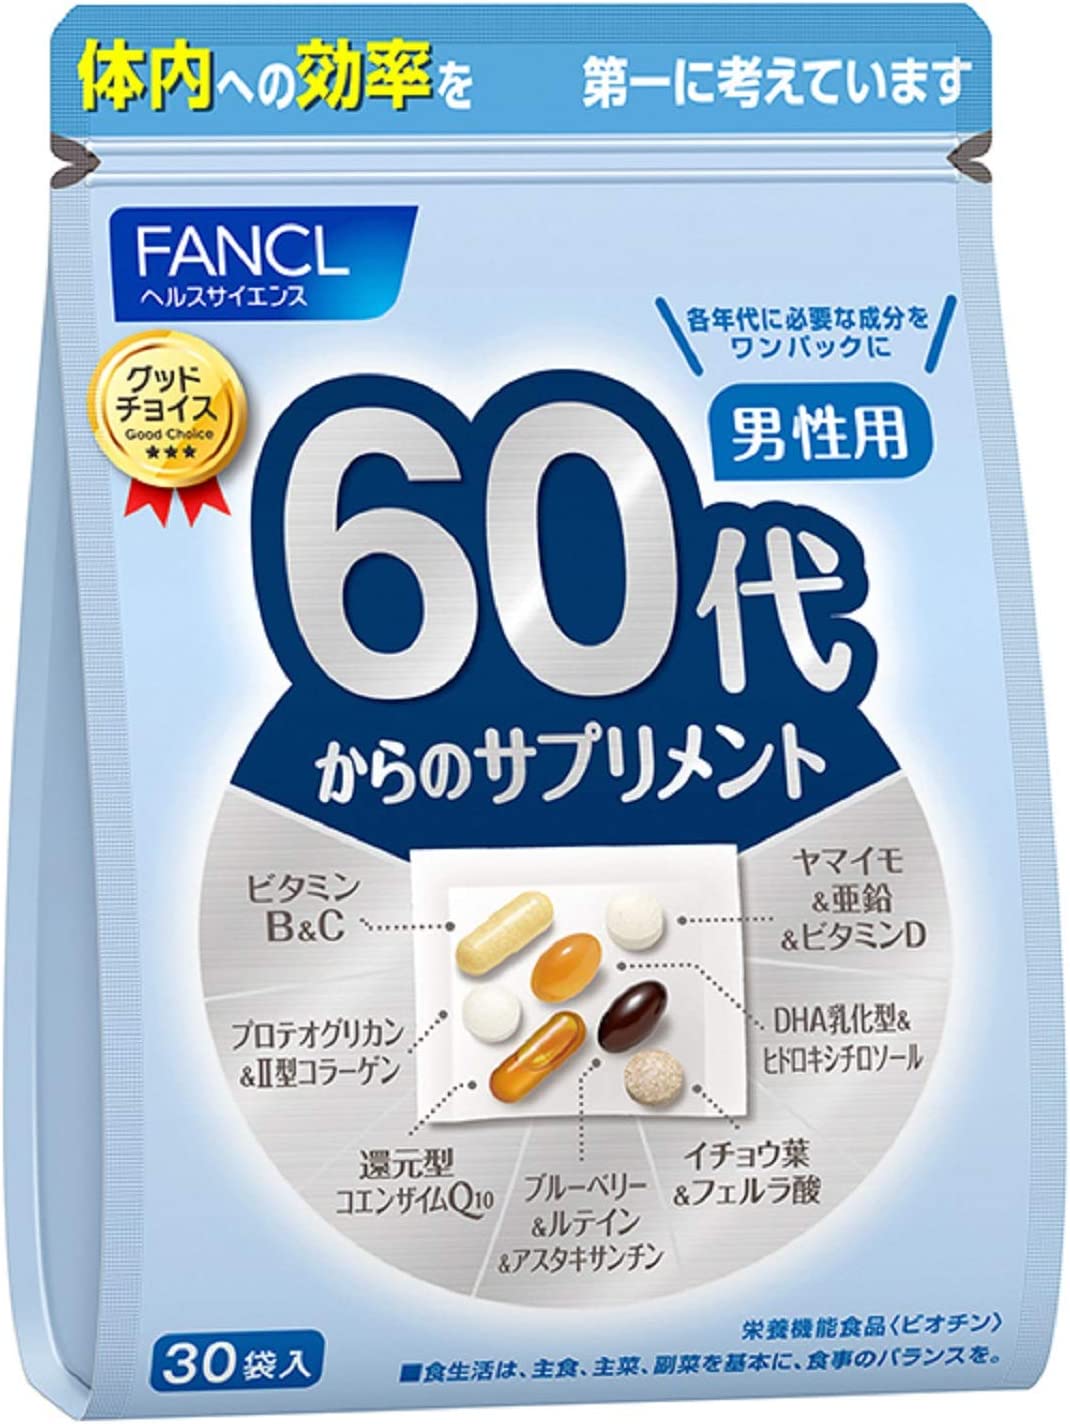 Комплекс витамин FANCL для мужчин старше 60 лет комплекс витаминов kwc multi vitamin витамины а с k2 фолиевая кислота 60 шт